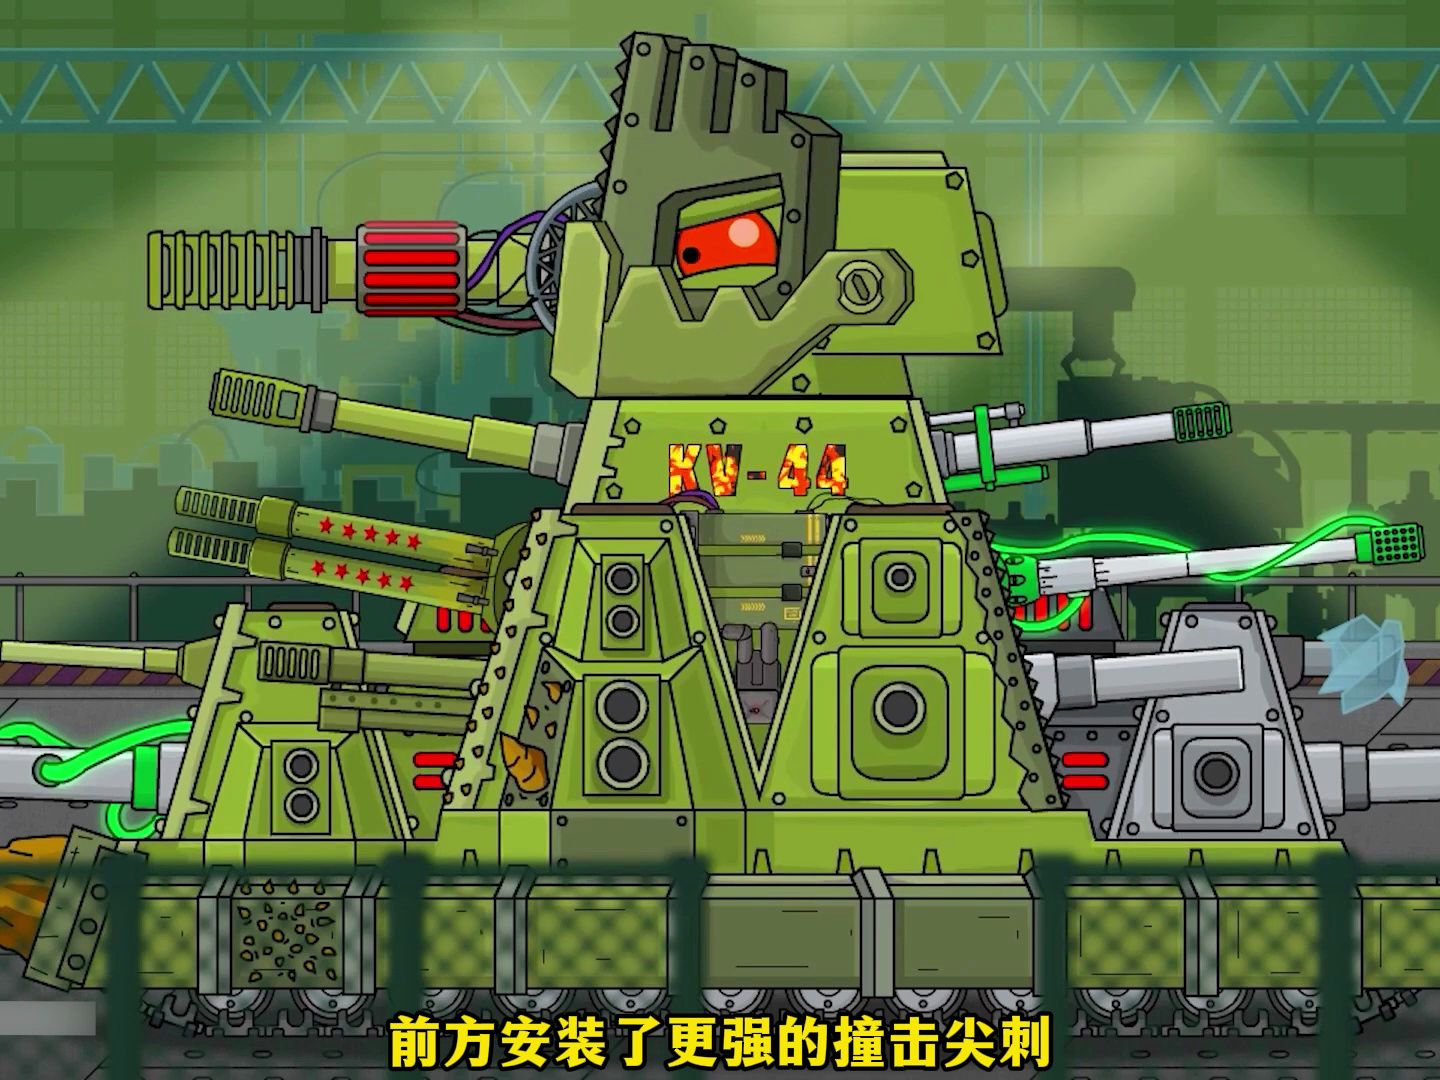 坦克动画,利用刽子手的残骸和力量,维修改进kv44